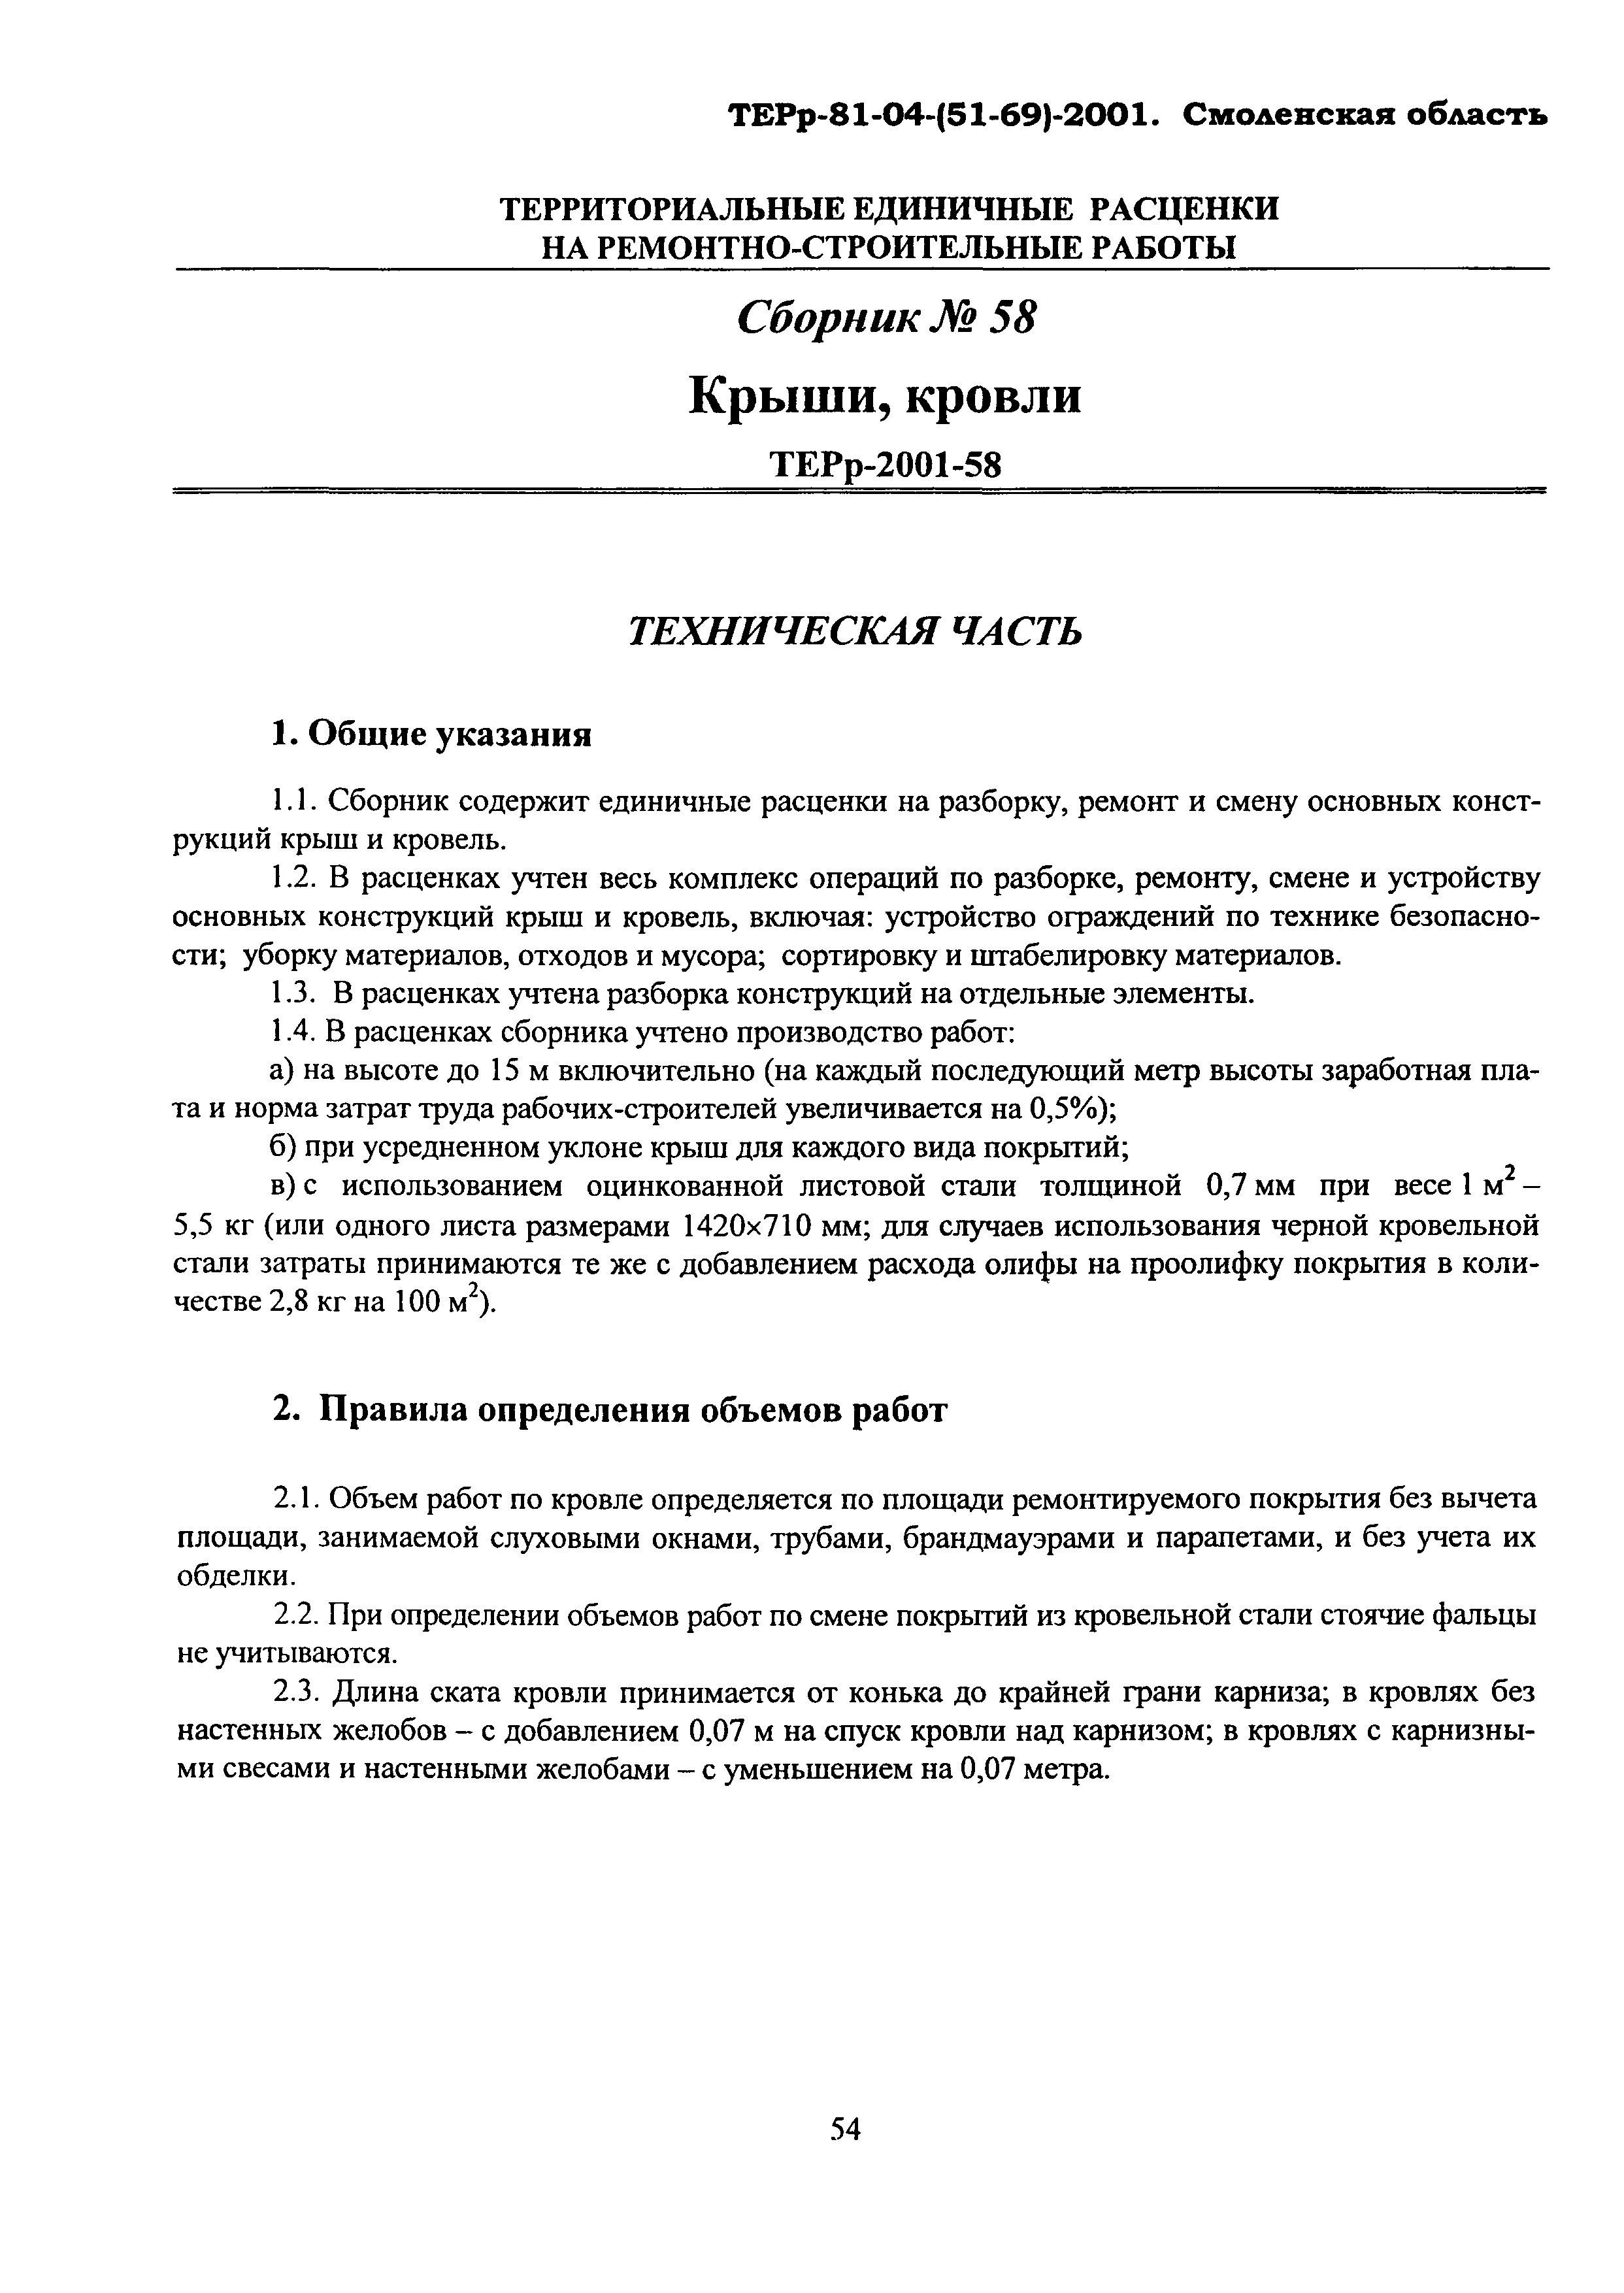 ТЕРр Смоленской области 2001-58